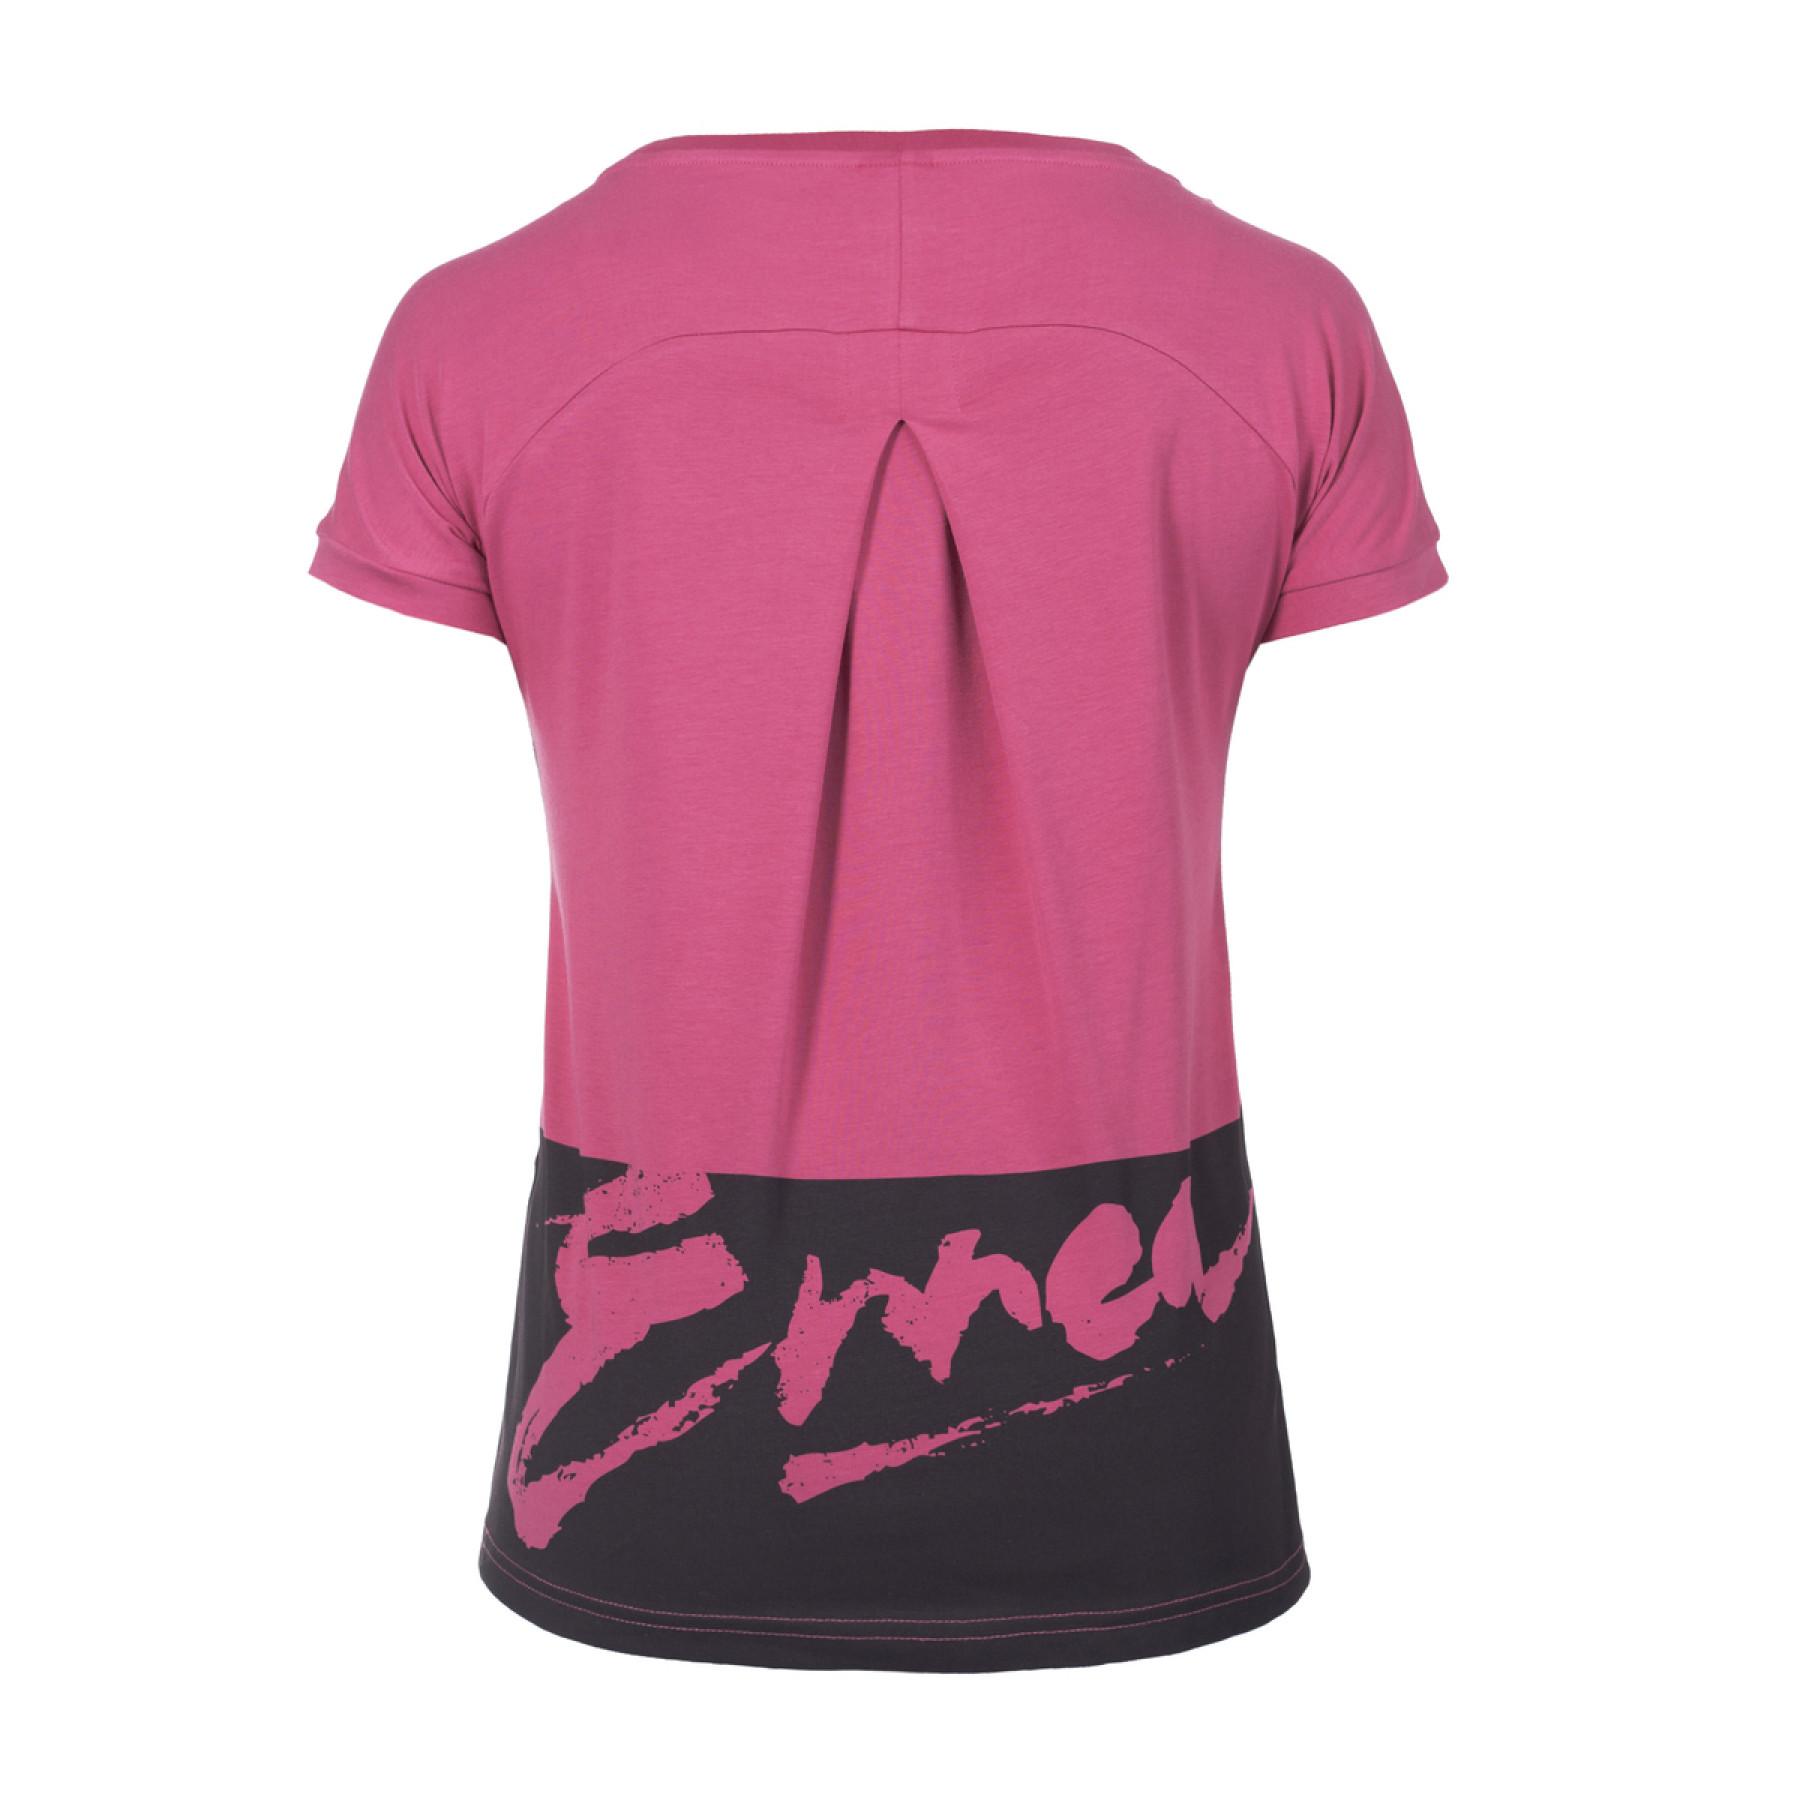 Frauen-T-Shirt Errea rhetta